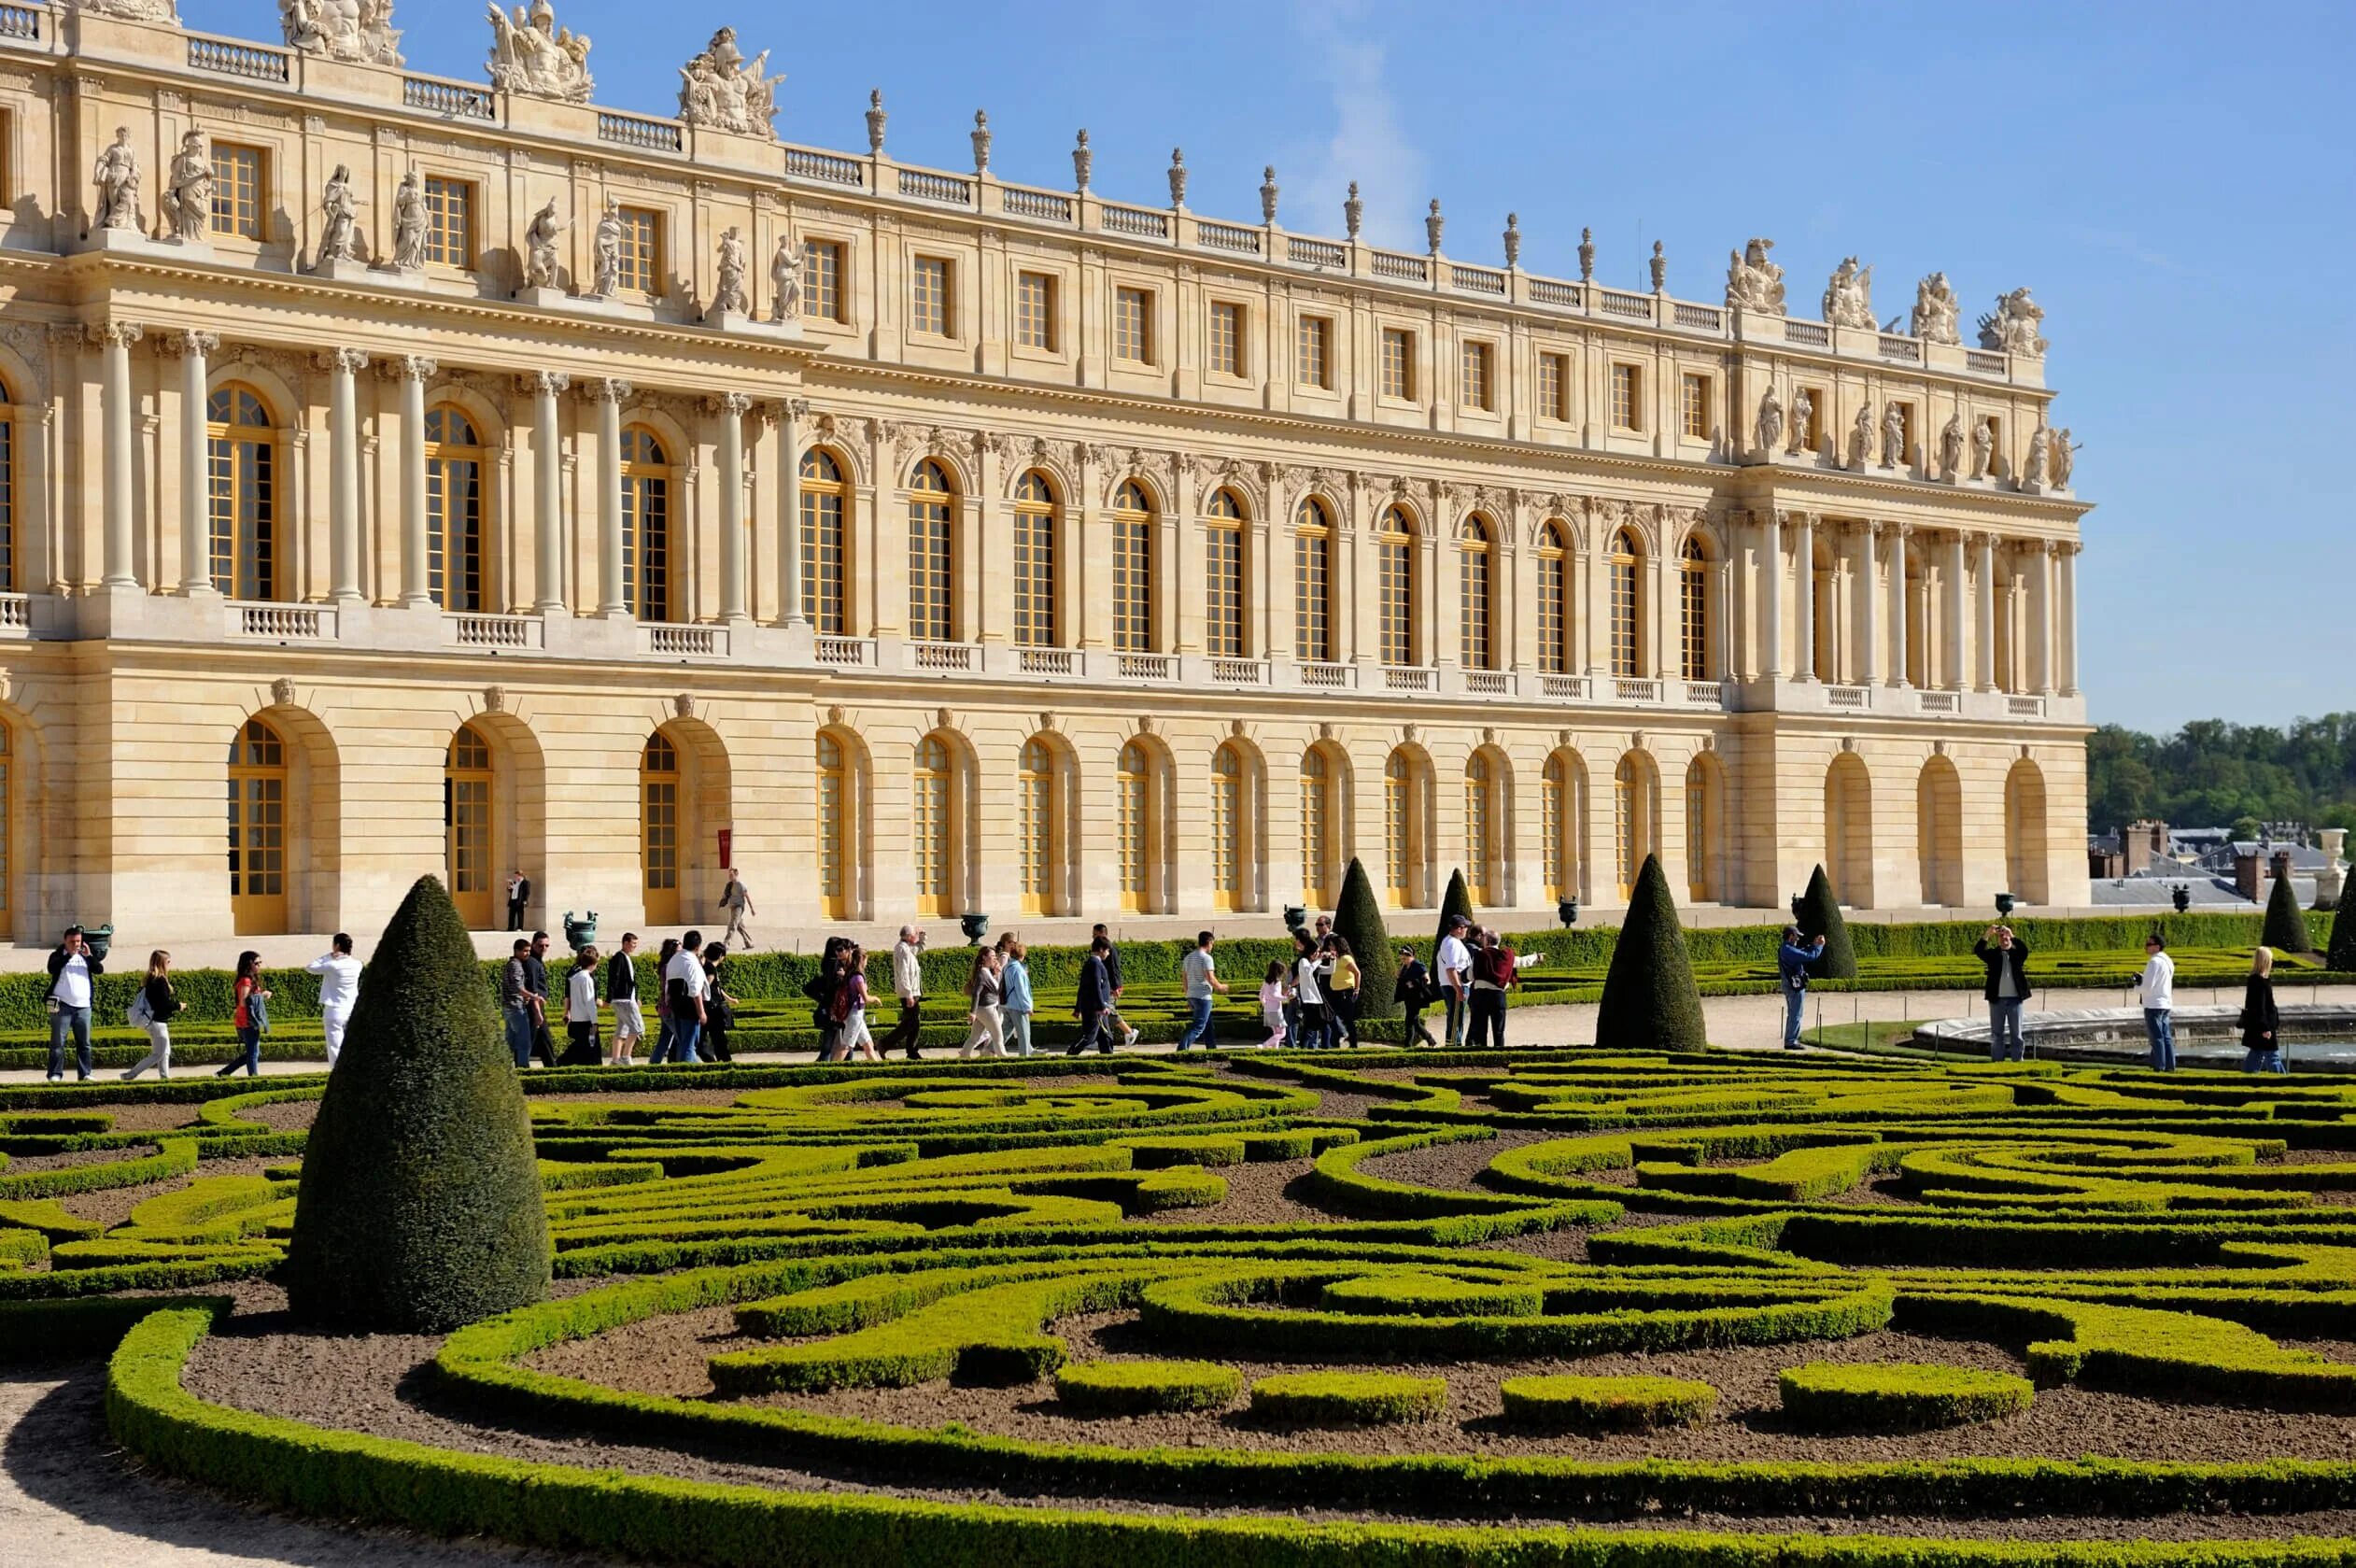 Версальский дворец, Версаль дворец Версаля. Версаль дворцово-парковый ансамбль во Франции. Парковый ансамбль Версаля во Франции. Франция Барокко Версальский дворец.